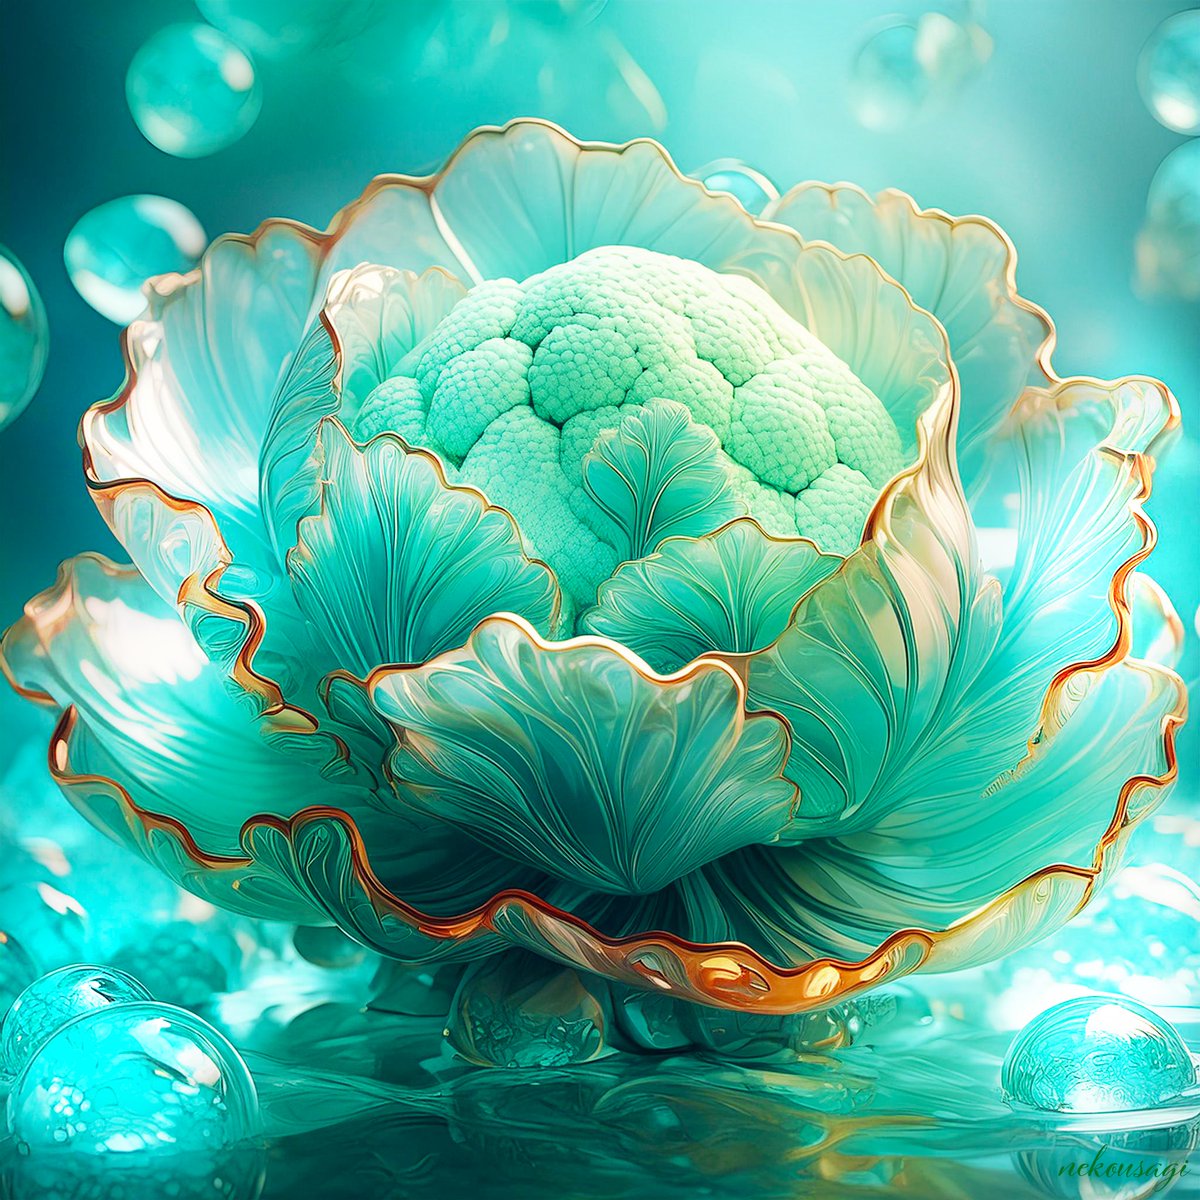 glass cauliflower
真夜中に作ると訳わからないものができるものですねw
#AdobeFirefly  #photoshop #AIart #AIイラスト︎